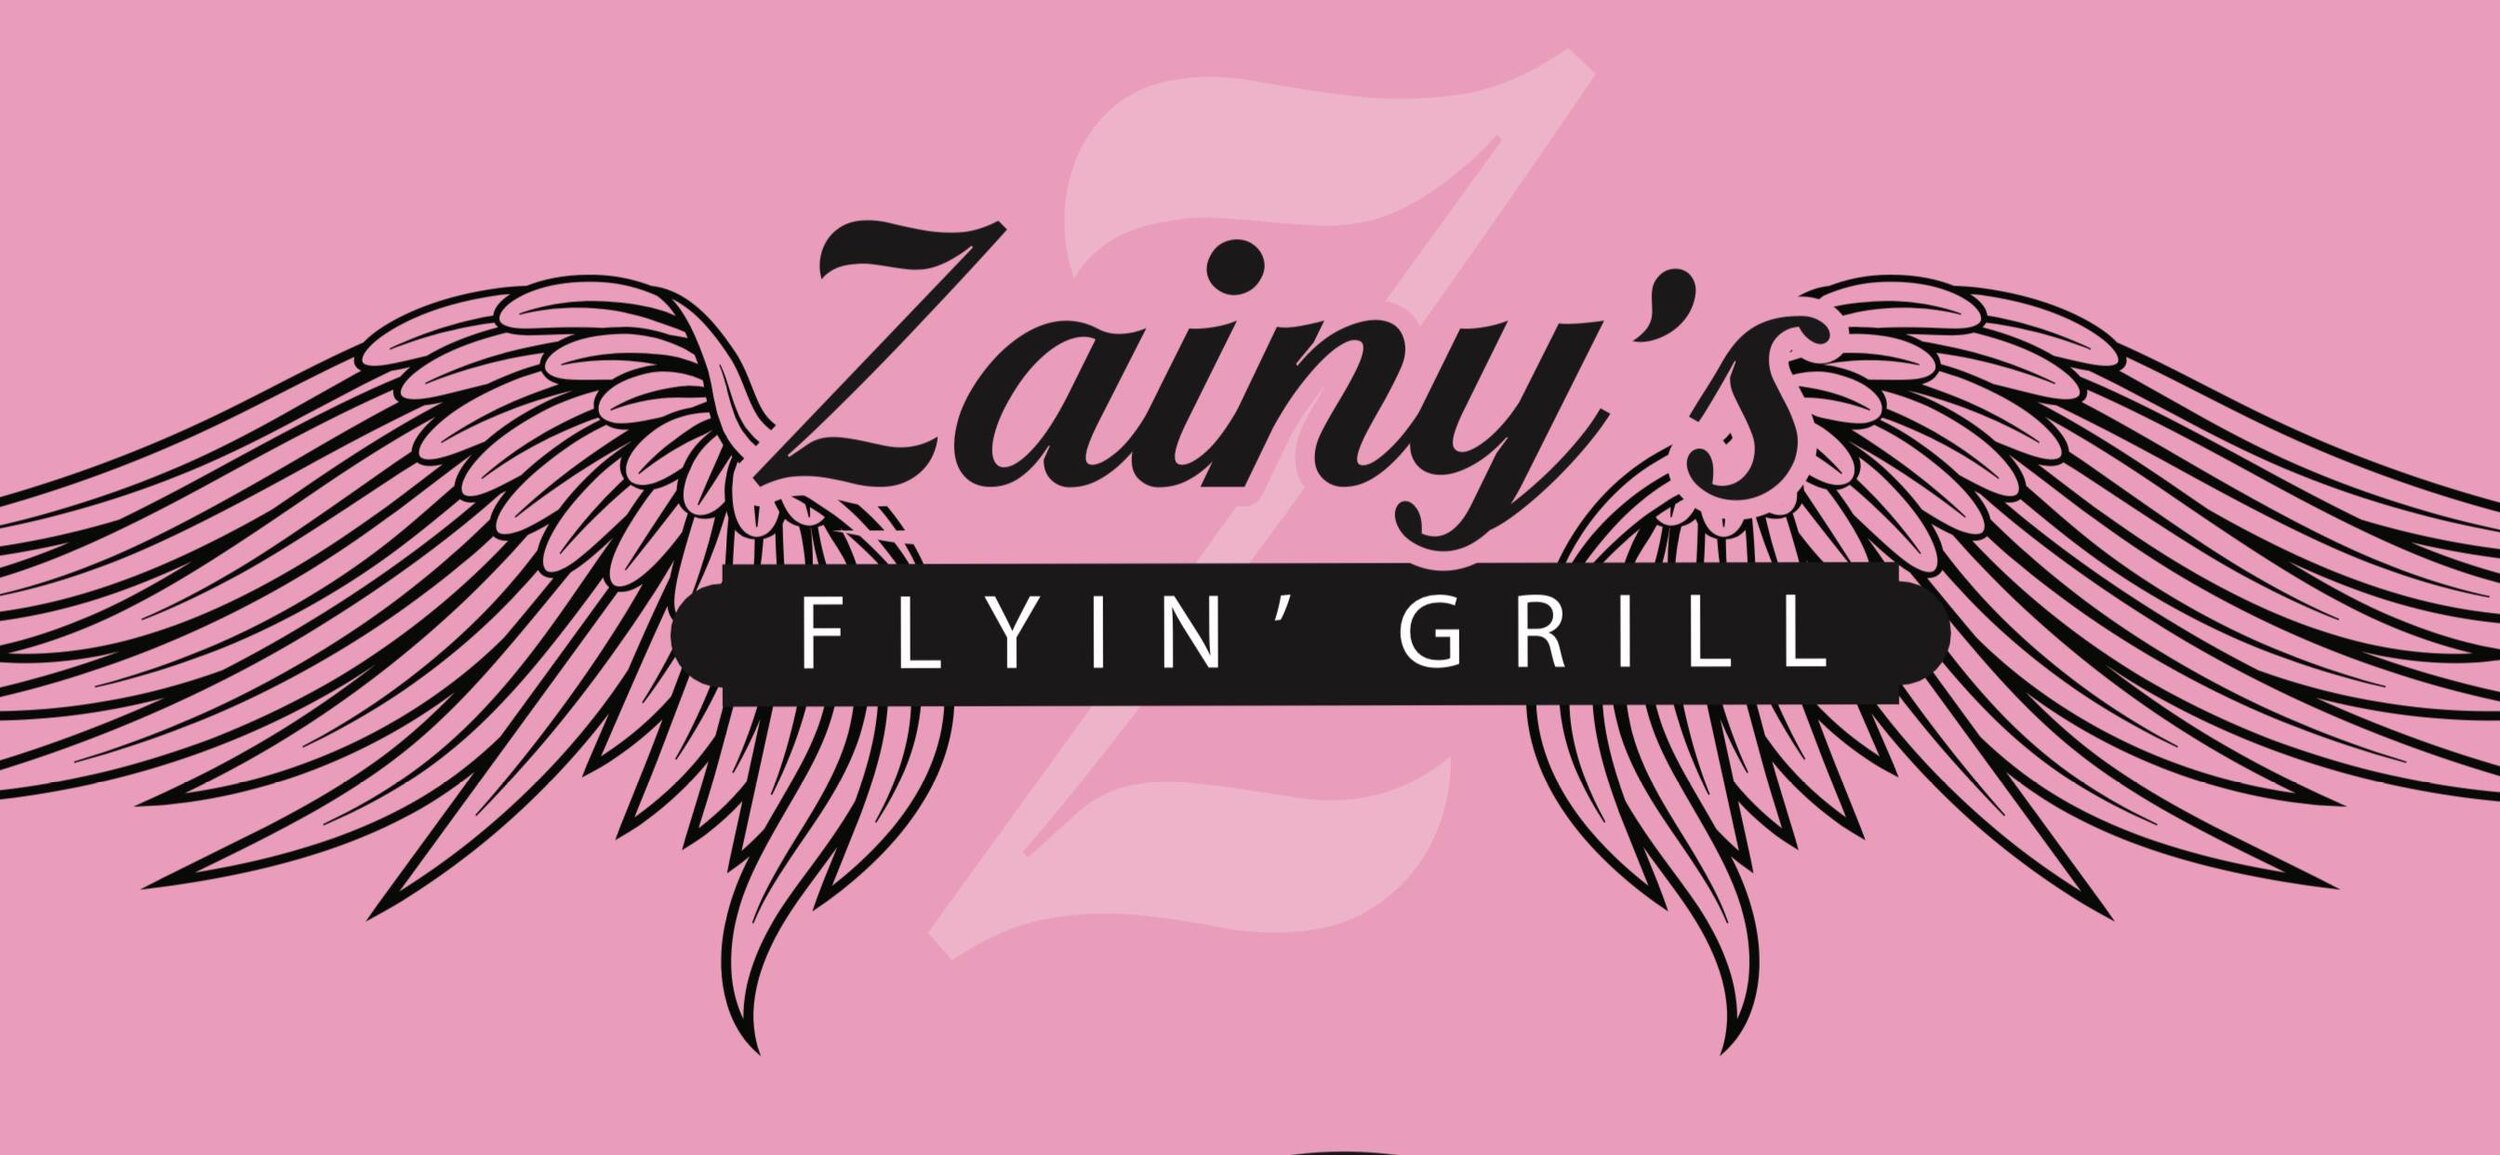 Zainy's Flyin' Grill.jpg